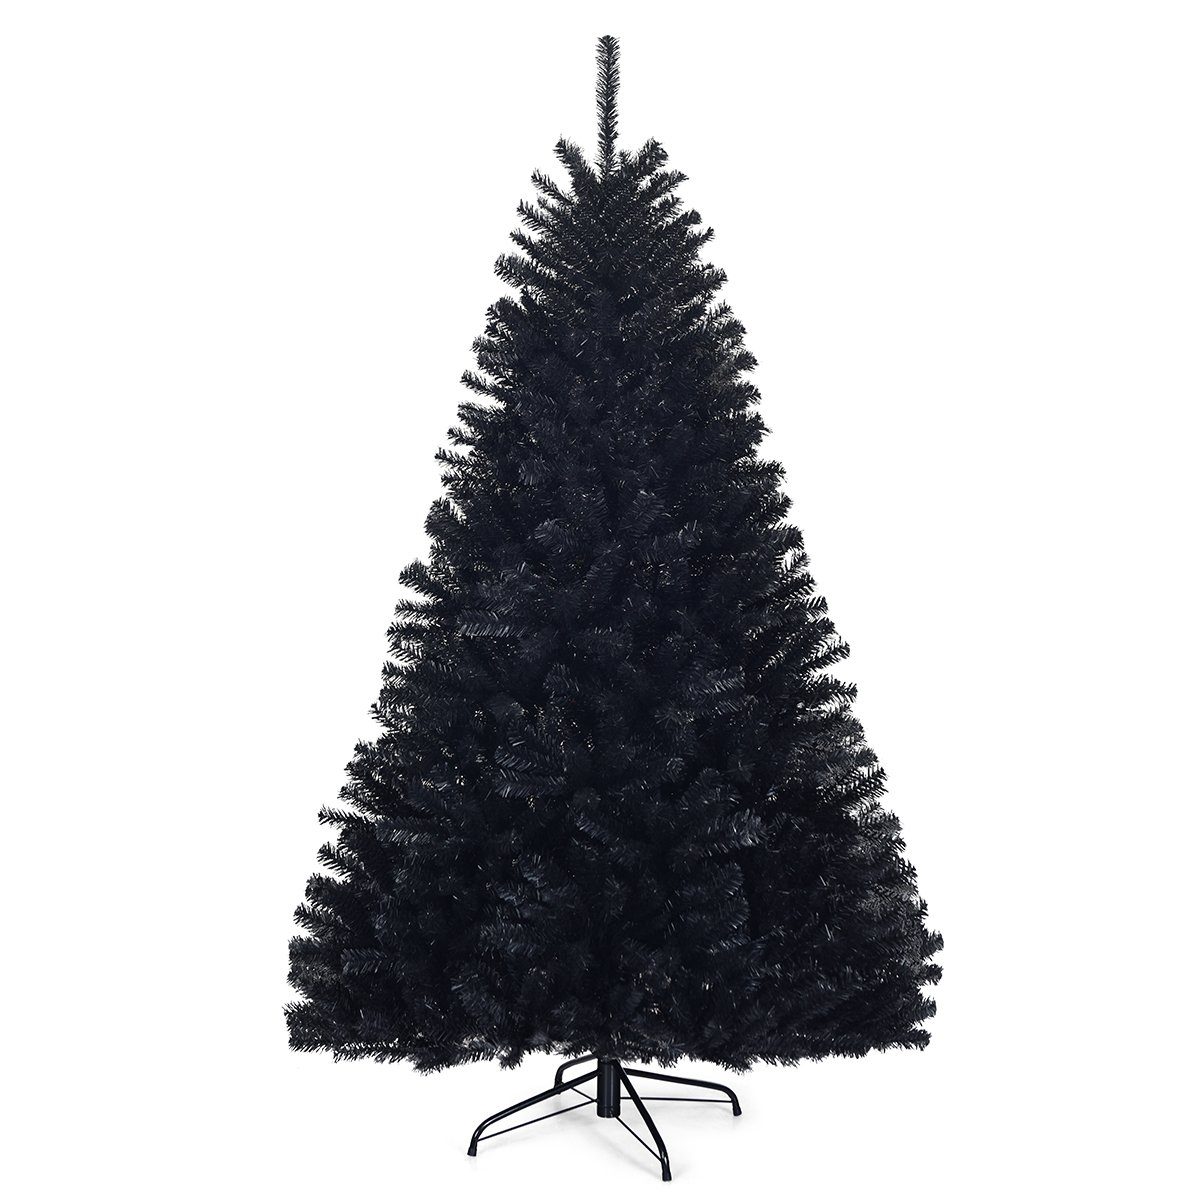 Weihnachtsbaum künstlicher Christbaum Grün mit faltbaren Metallständer Kunststoff Buschiger Zweigen für Weihnachten Ihnen außen Schnellaufbau durch Klappen 210 cm Hoch